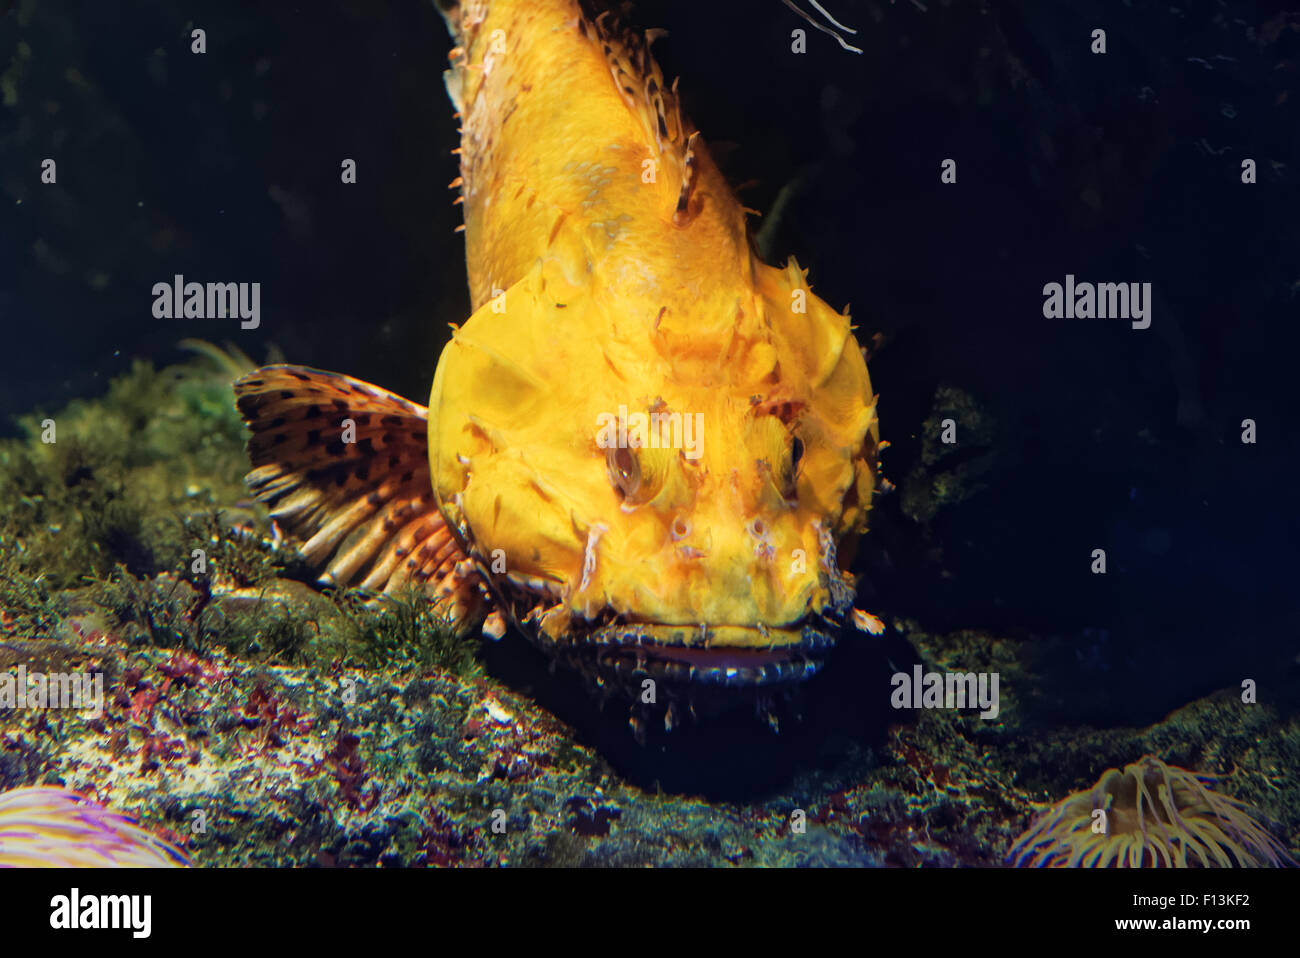 Scorpaena scrofa, nome comune red scorfani, Bigscale scorfani, o di grande scala Scorpion Fish è un infame marine sp Foto Stock